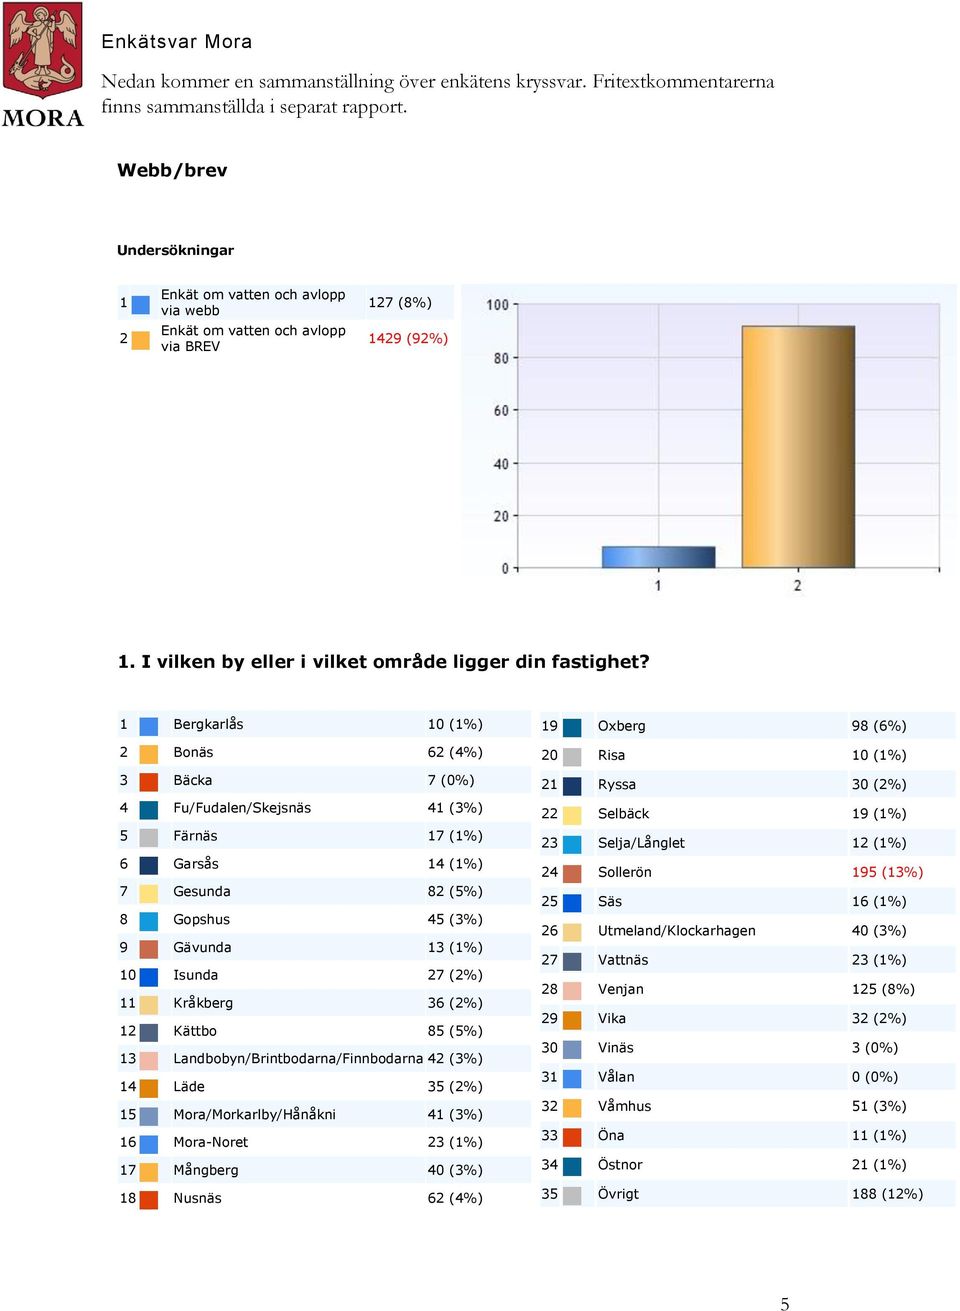 Bergkarlås 0 (%) Bonäs 6 (4%) Bäcka 7 (0%) 4 Fu/Fudalen/Skejsnäs 4 (%) 5 Färnäs 7 (%) 6 Garsås 4 (%) 7 Gesunda 8 (5%) 8 Gopshus 45 (%) 9 Gävunda (%) 0 Isunda 7 (%) Kråkberg 6 (%) Kättbo 85 (5%)